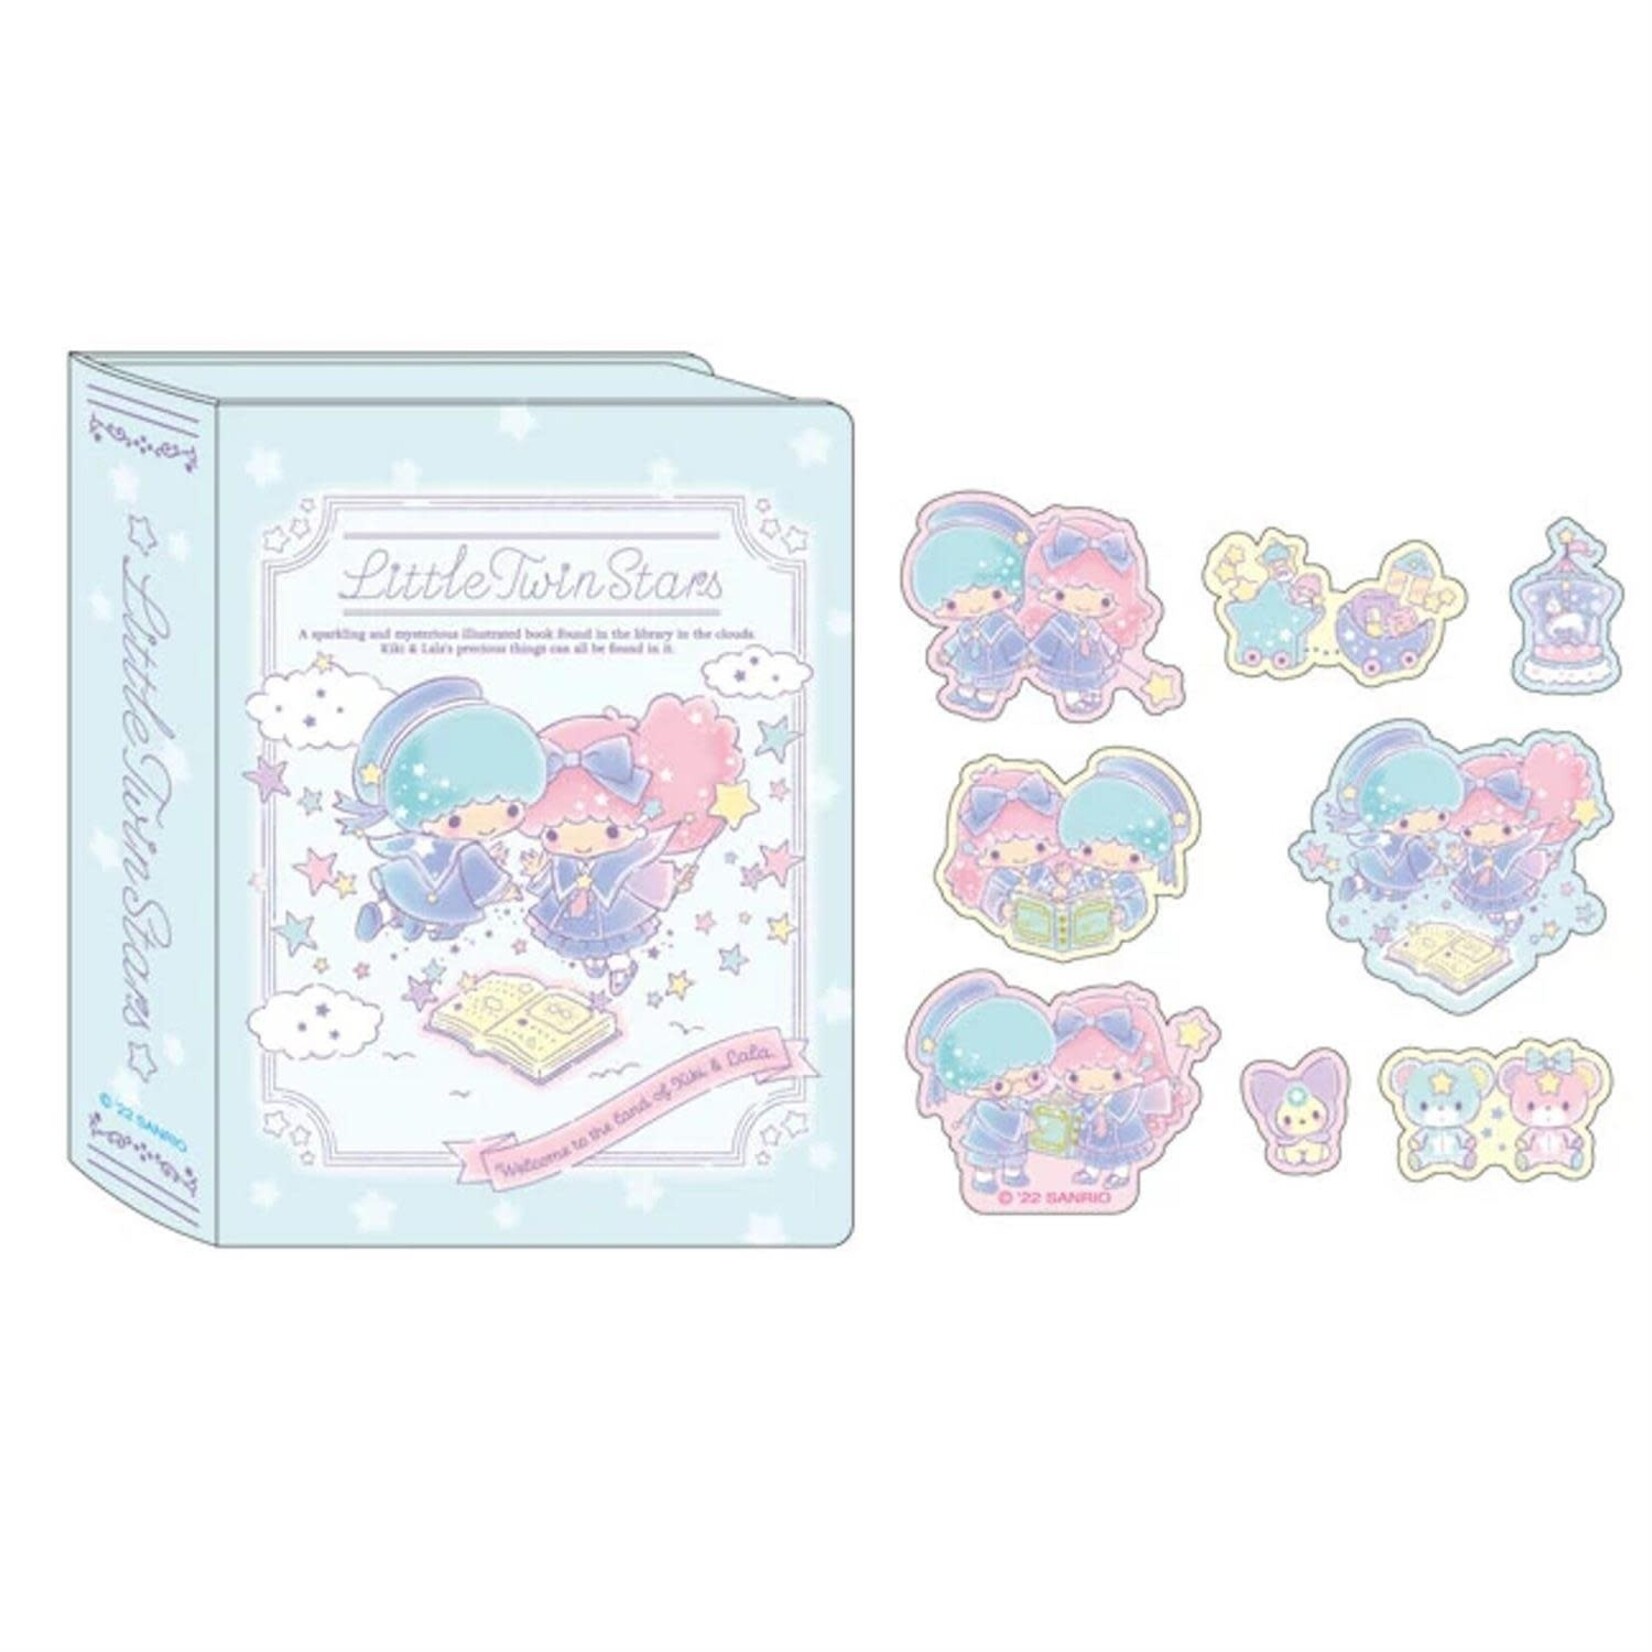 Sanrio Twin Stars Picture Book Stickers